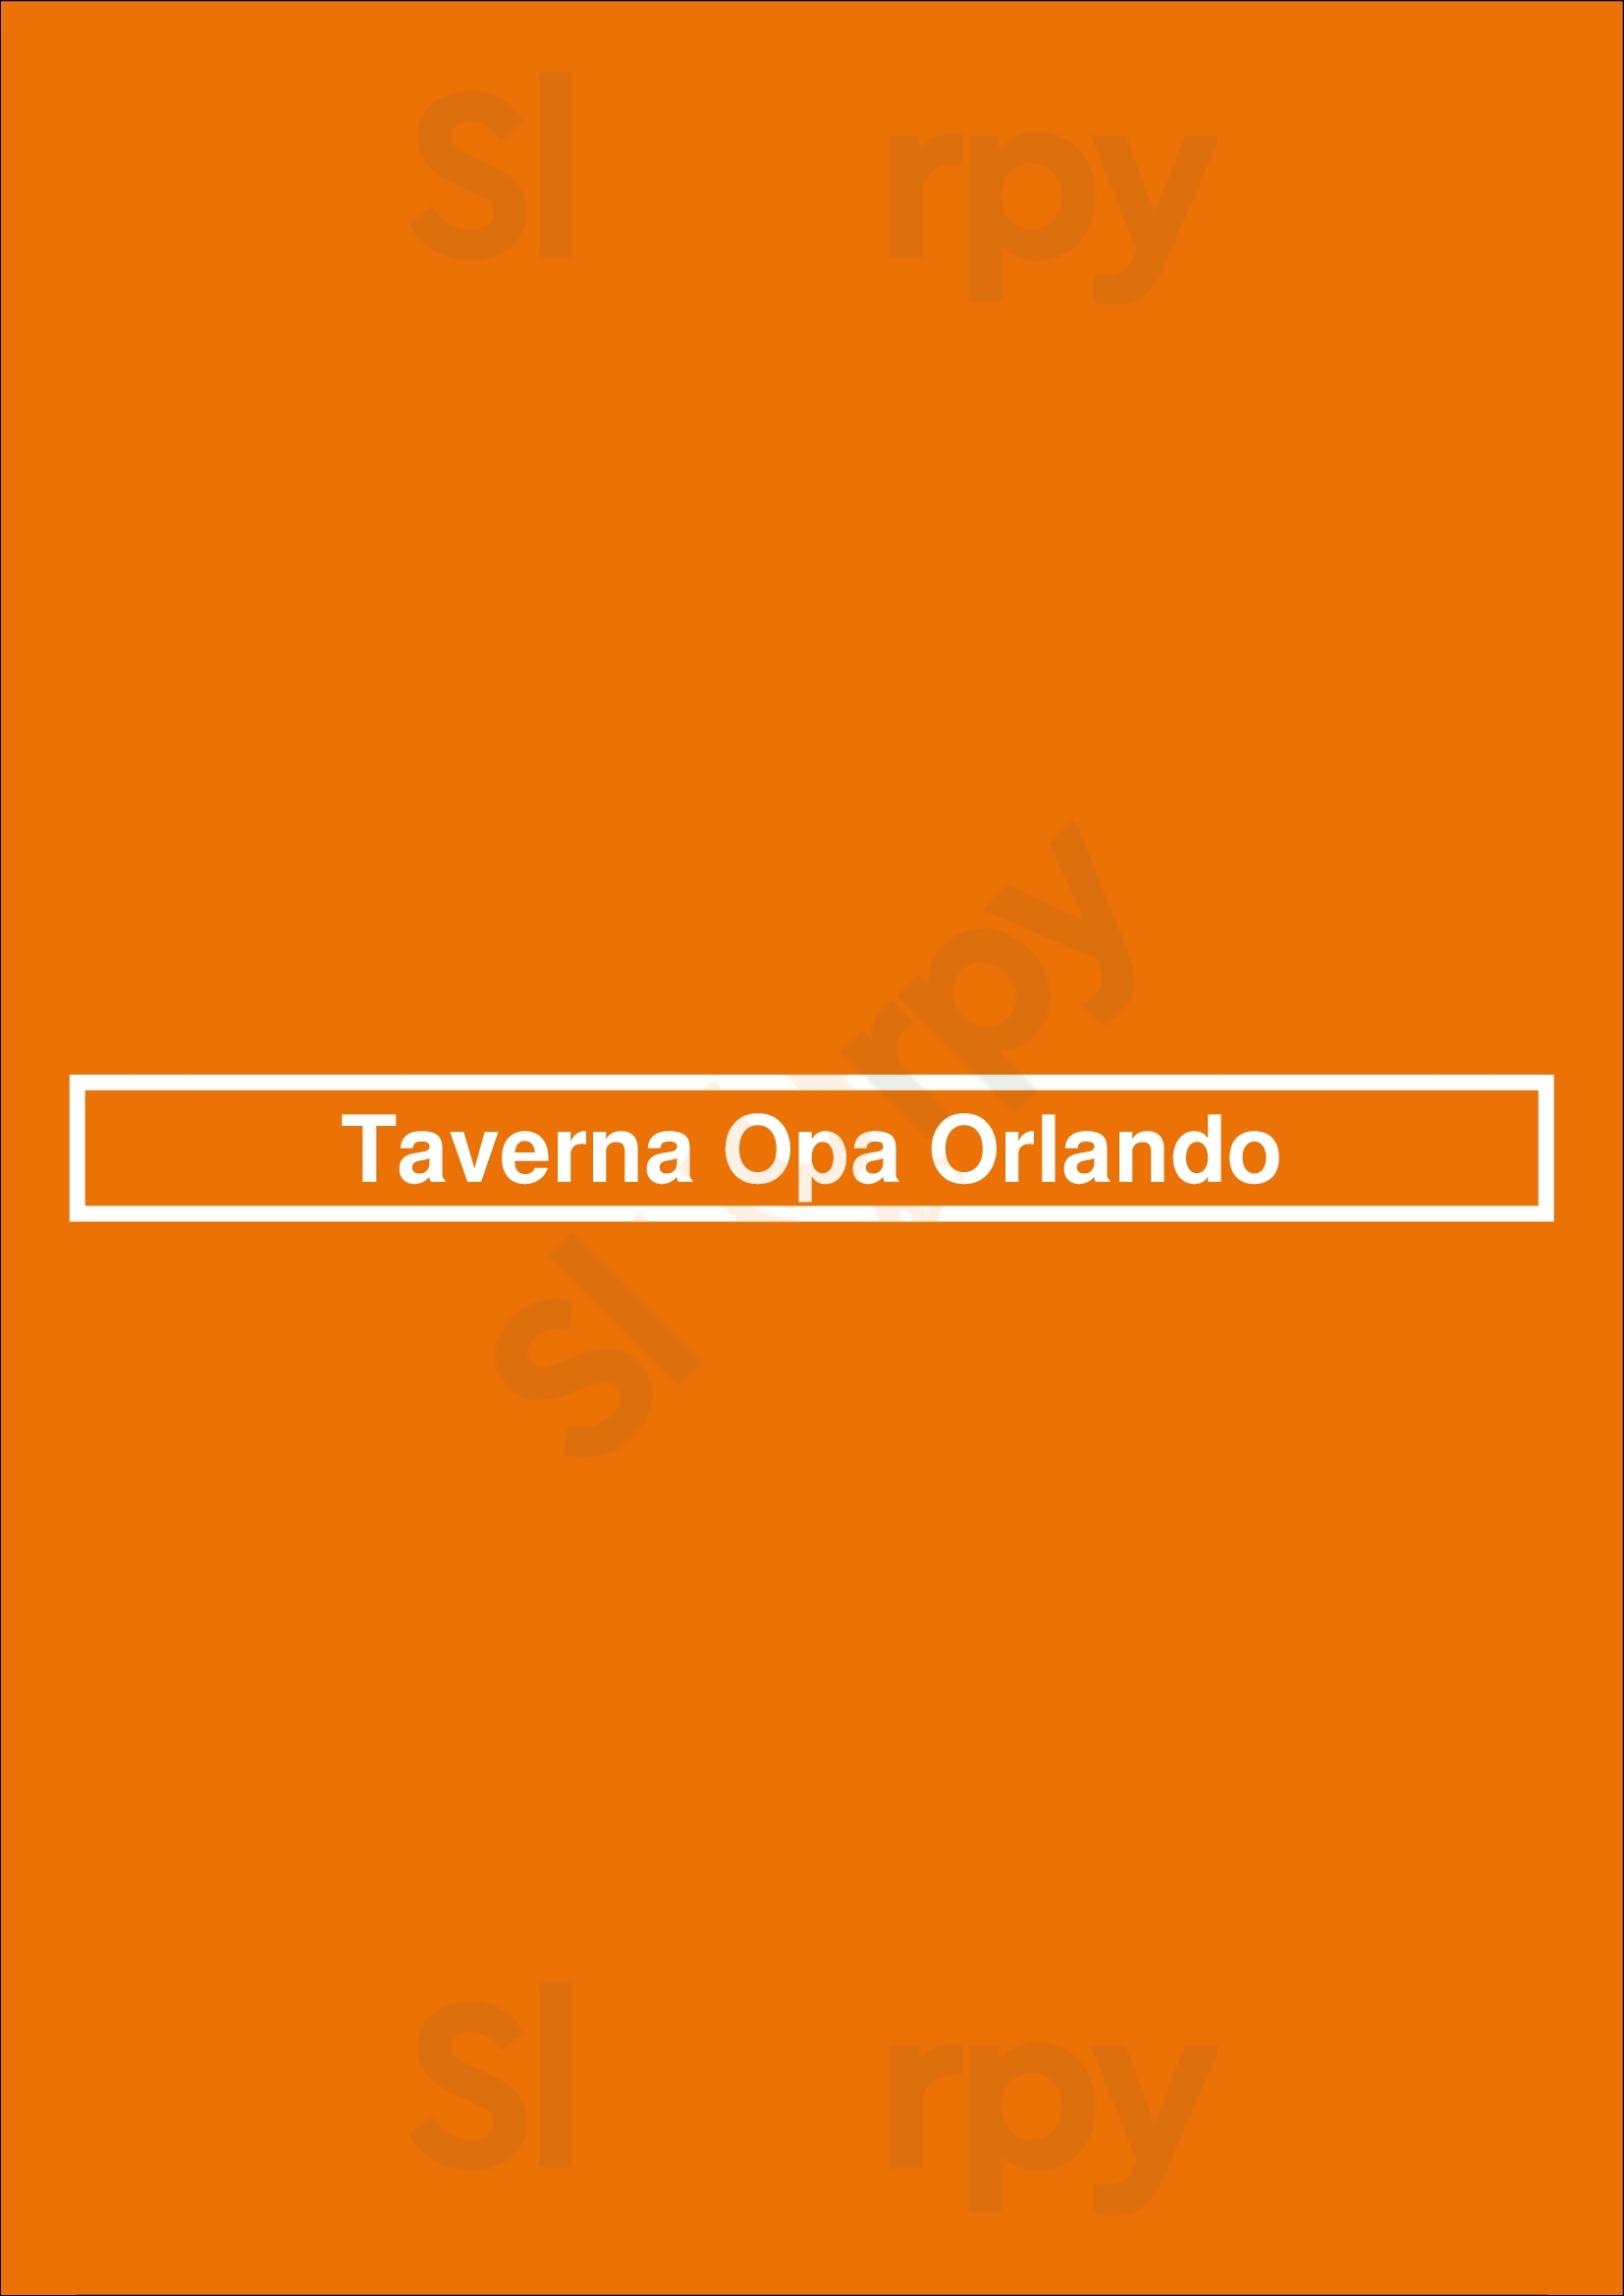 Taverna Opa Orlando Orlando Menu - 1